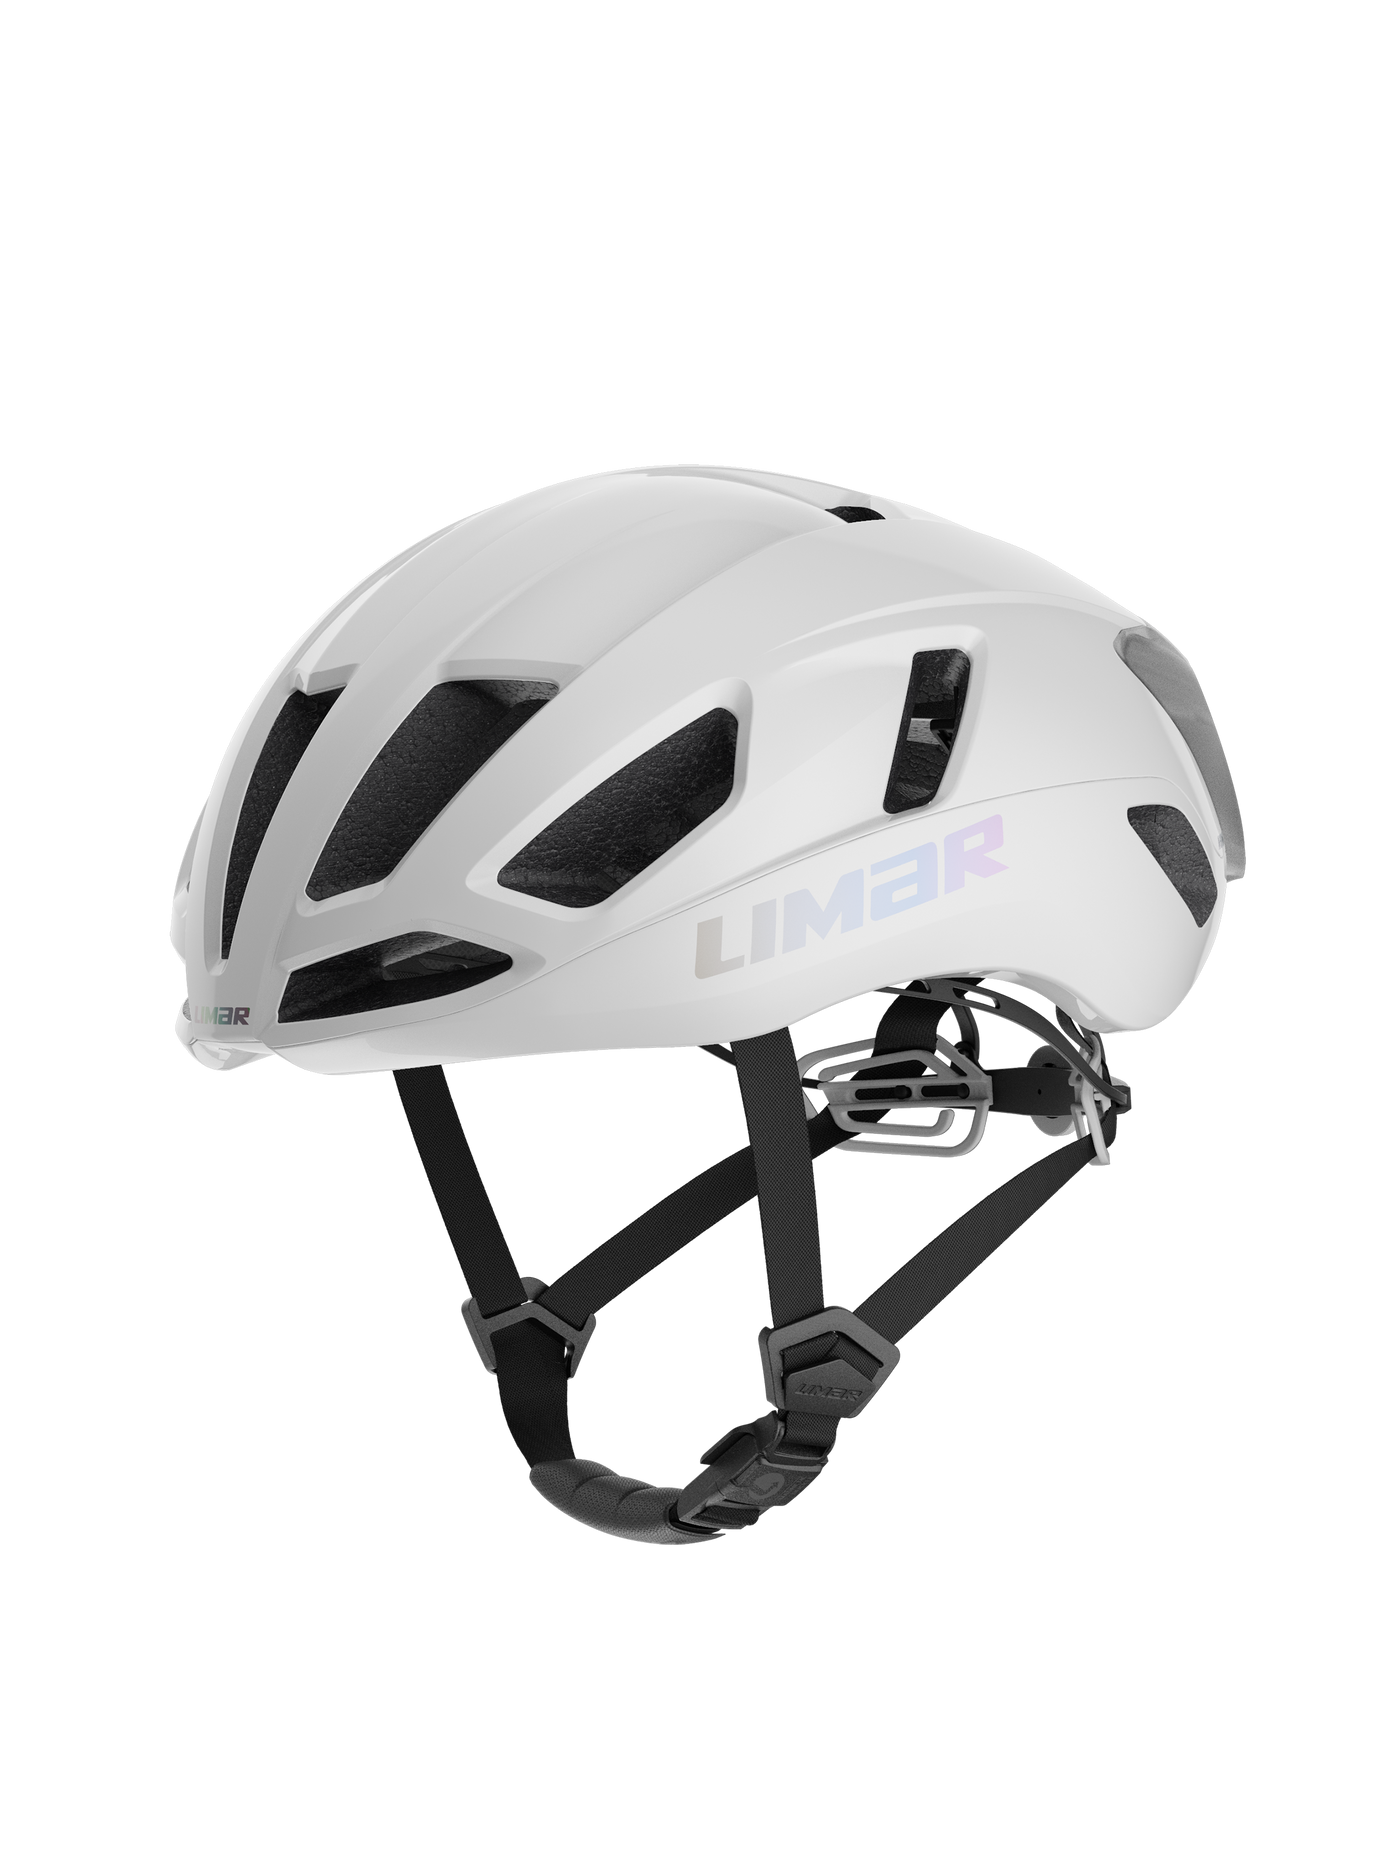 Limar Air Atlas | Cycling Helmet